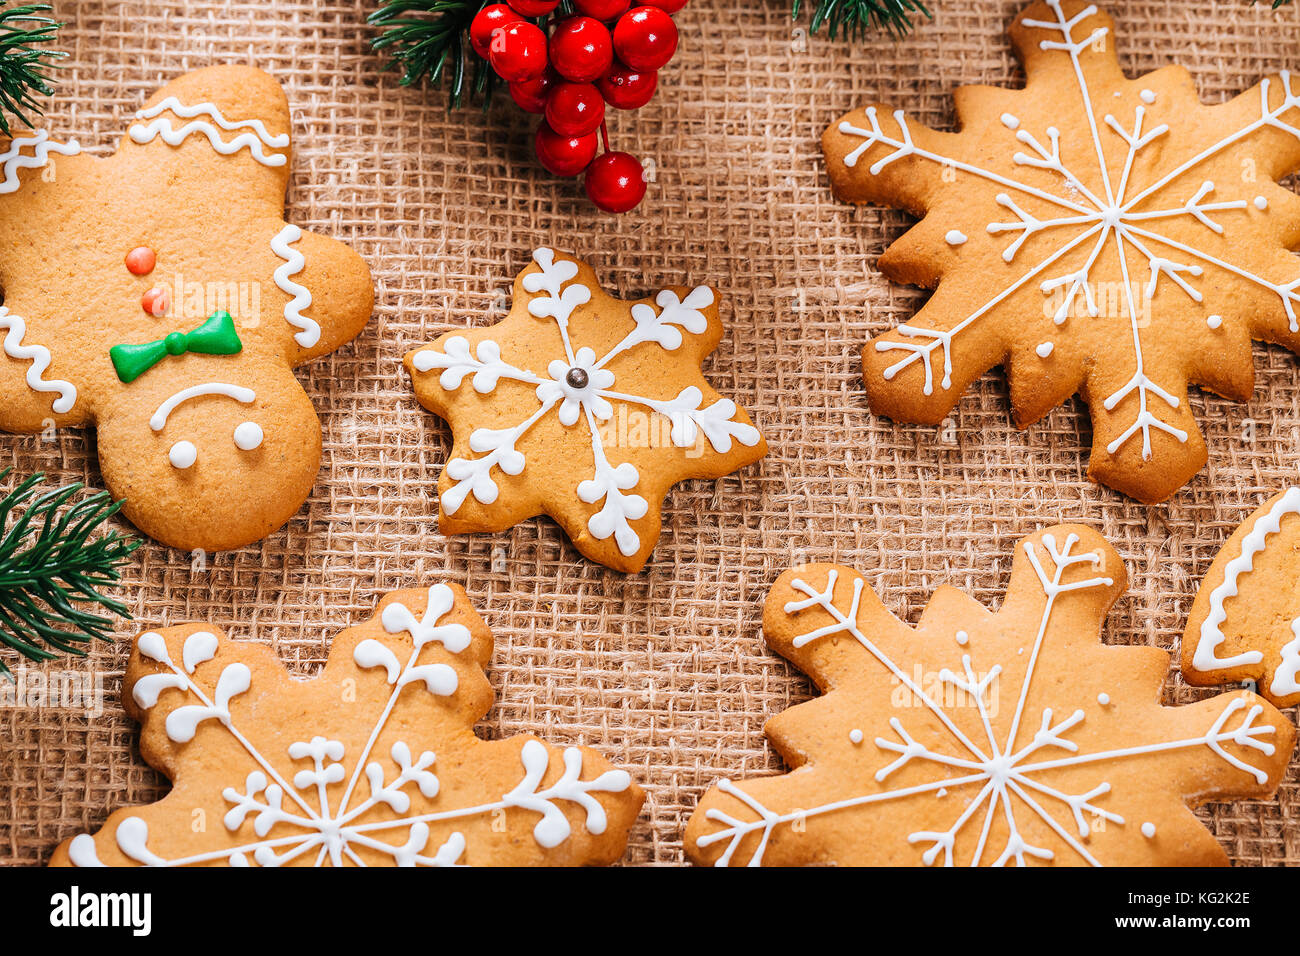 Gingerbread cookies caseros de navidad con ramas de árbol de navidad y año nuevo la decoración en la mesa con el mantel arpillera. feliz navidad tarjeta postal. Foto de stock